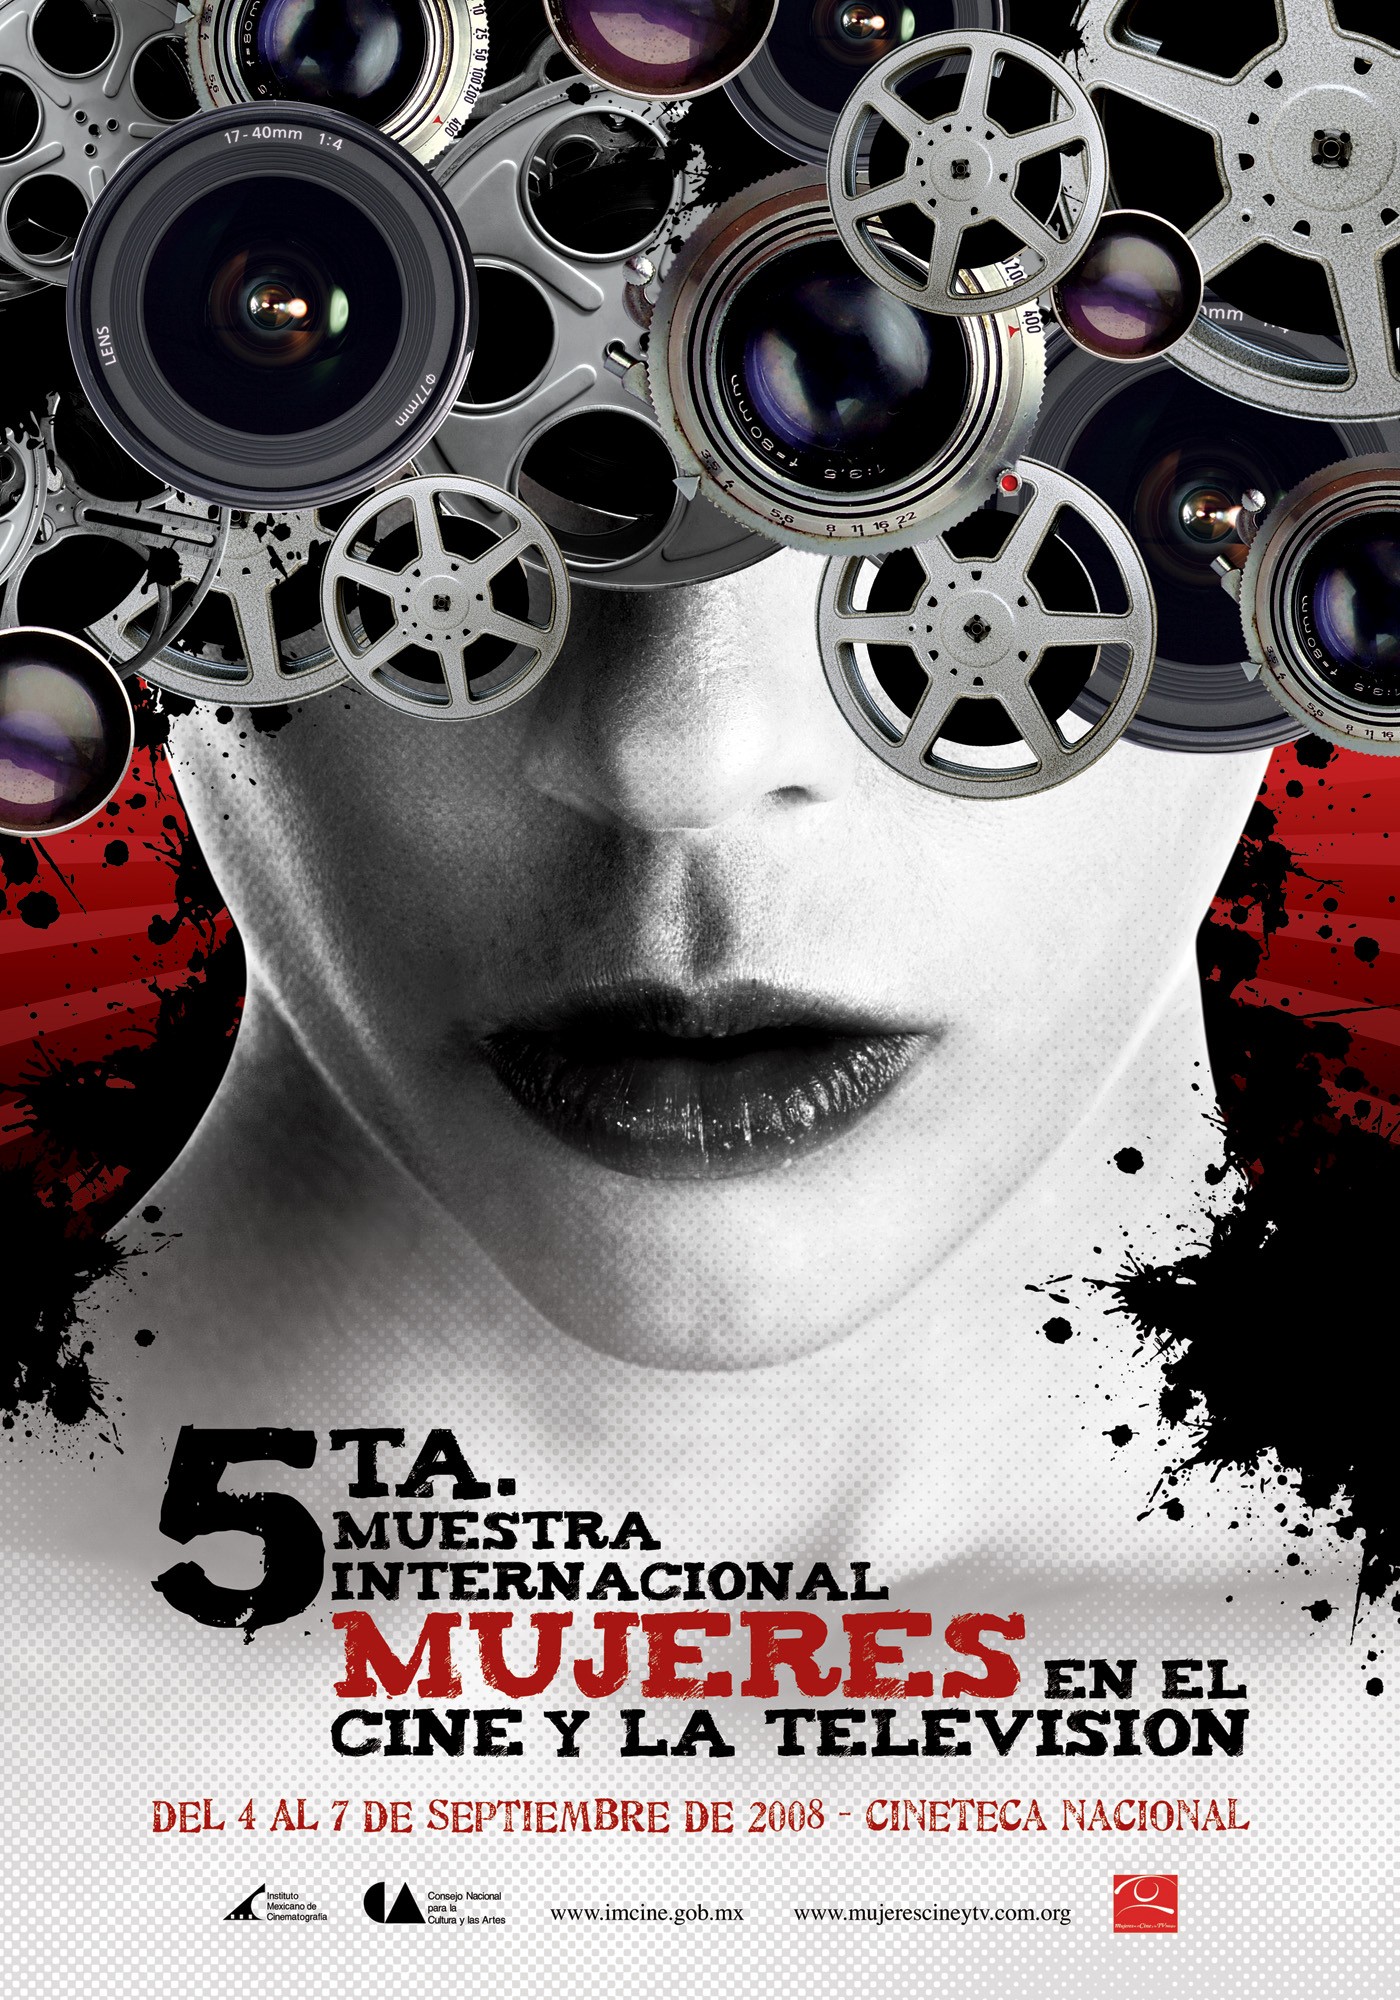 Mega Sized TV Poster Image for Muestra Internacional de Mujeres en el Cine y la Televisión 